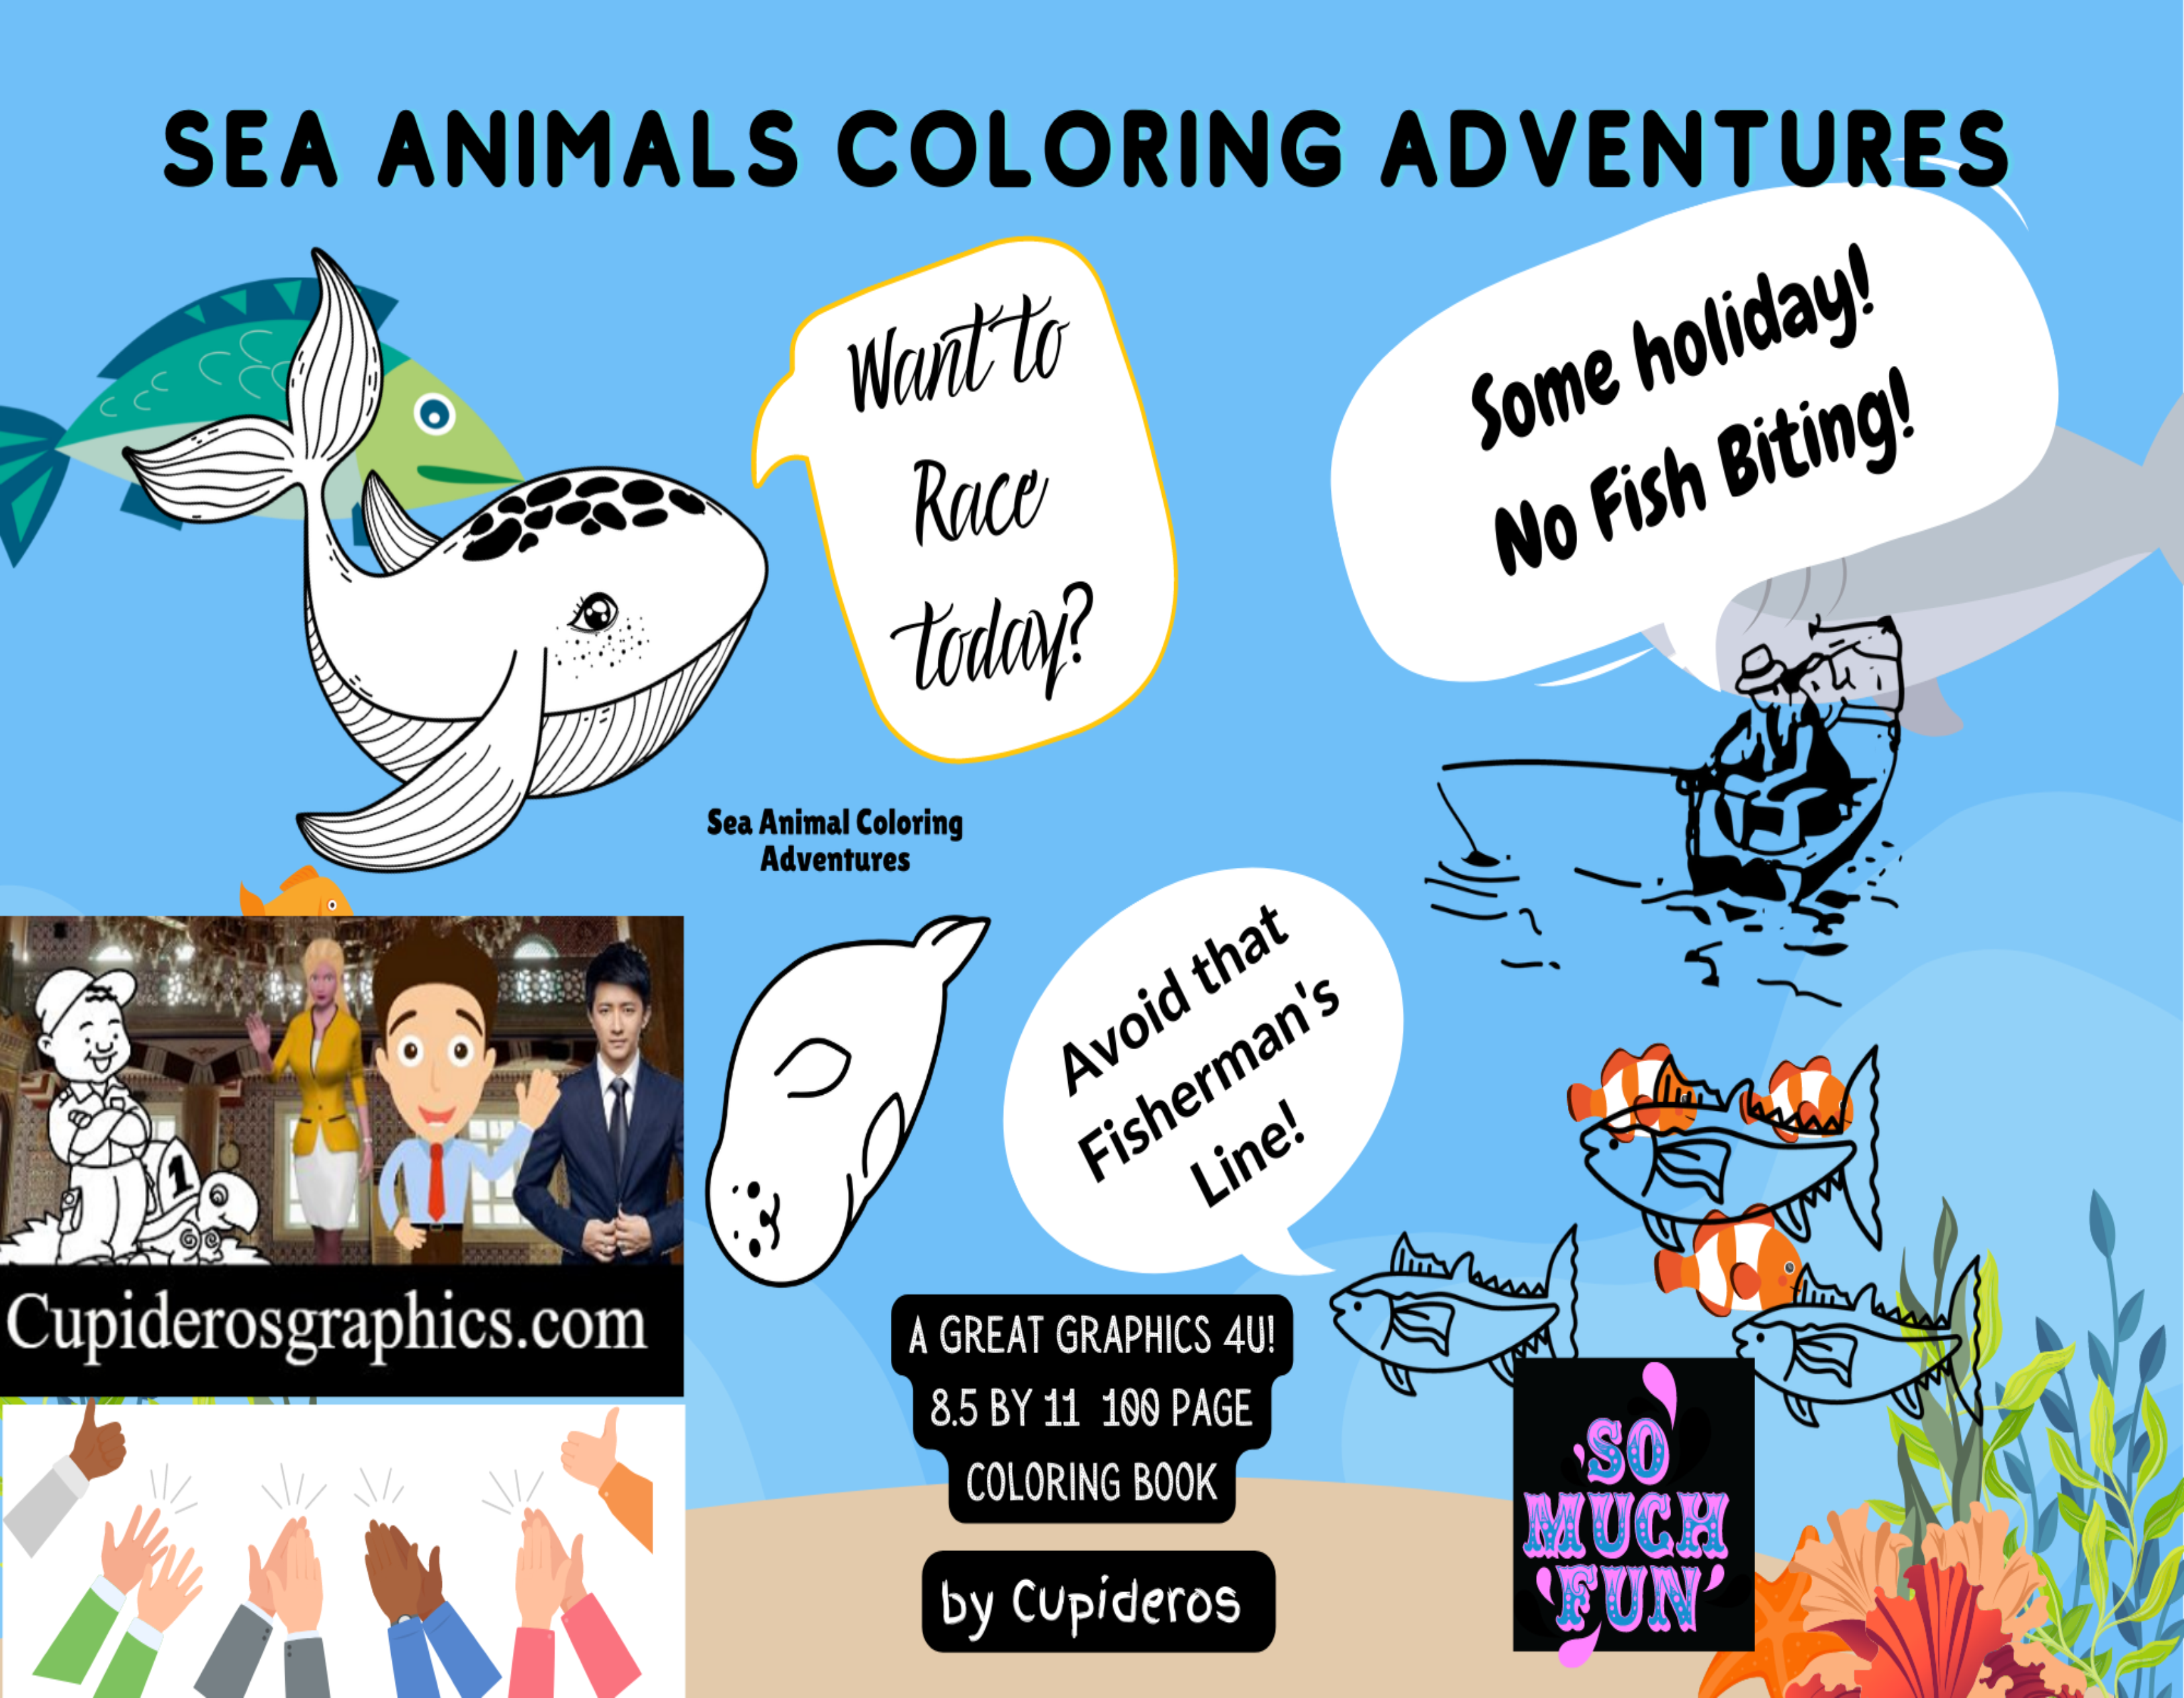 Sea Animals Coloring Adventures!